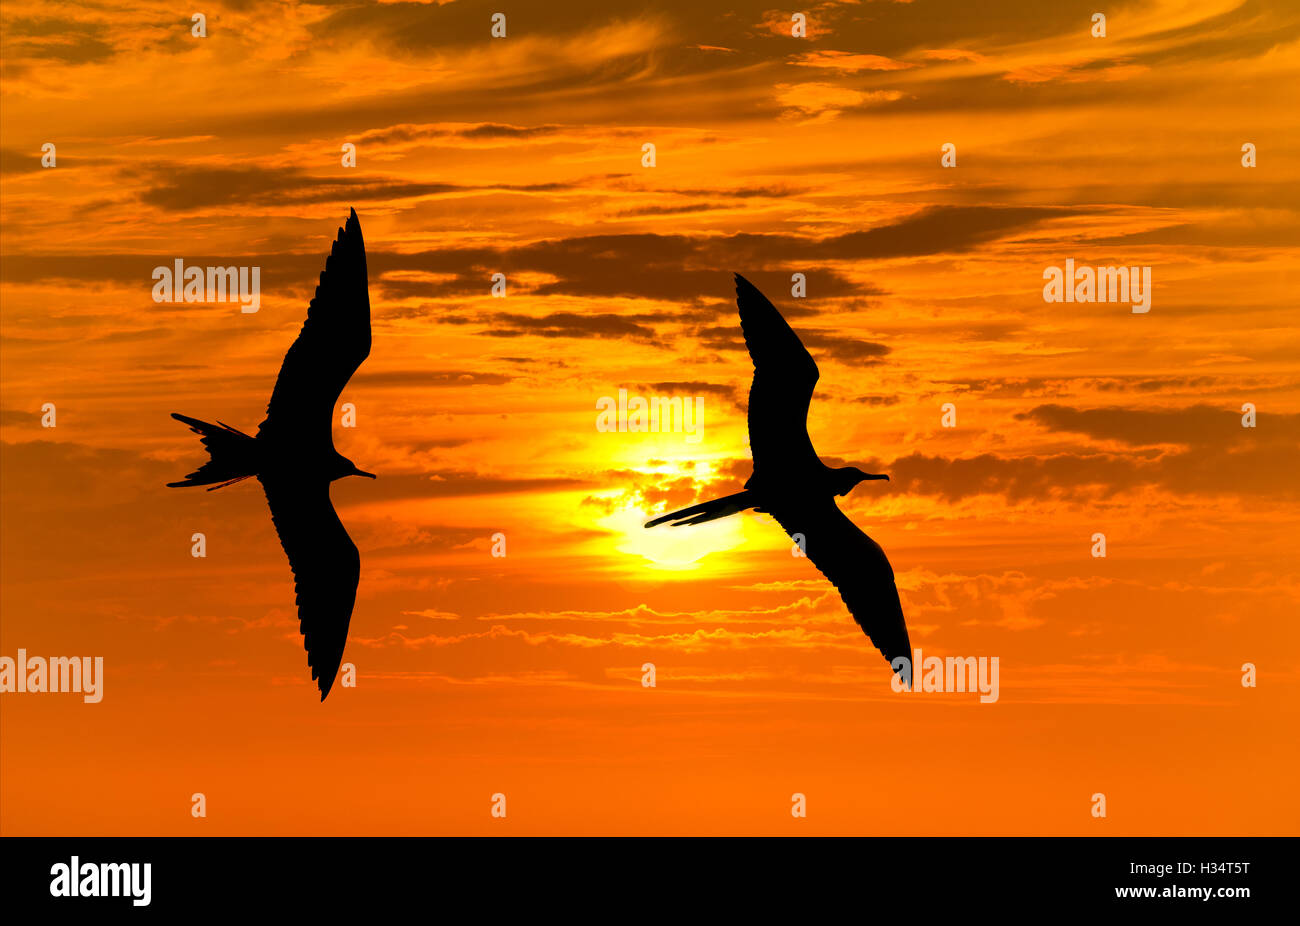 Silhouette di uccelli battenti si stagliano due uccelli volare insieme contro una vibrante arancione tramonto d'oro del cielo. Foto Stock